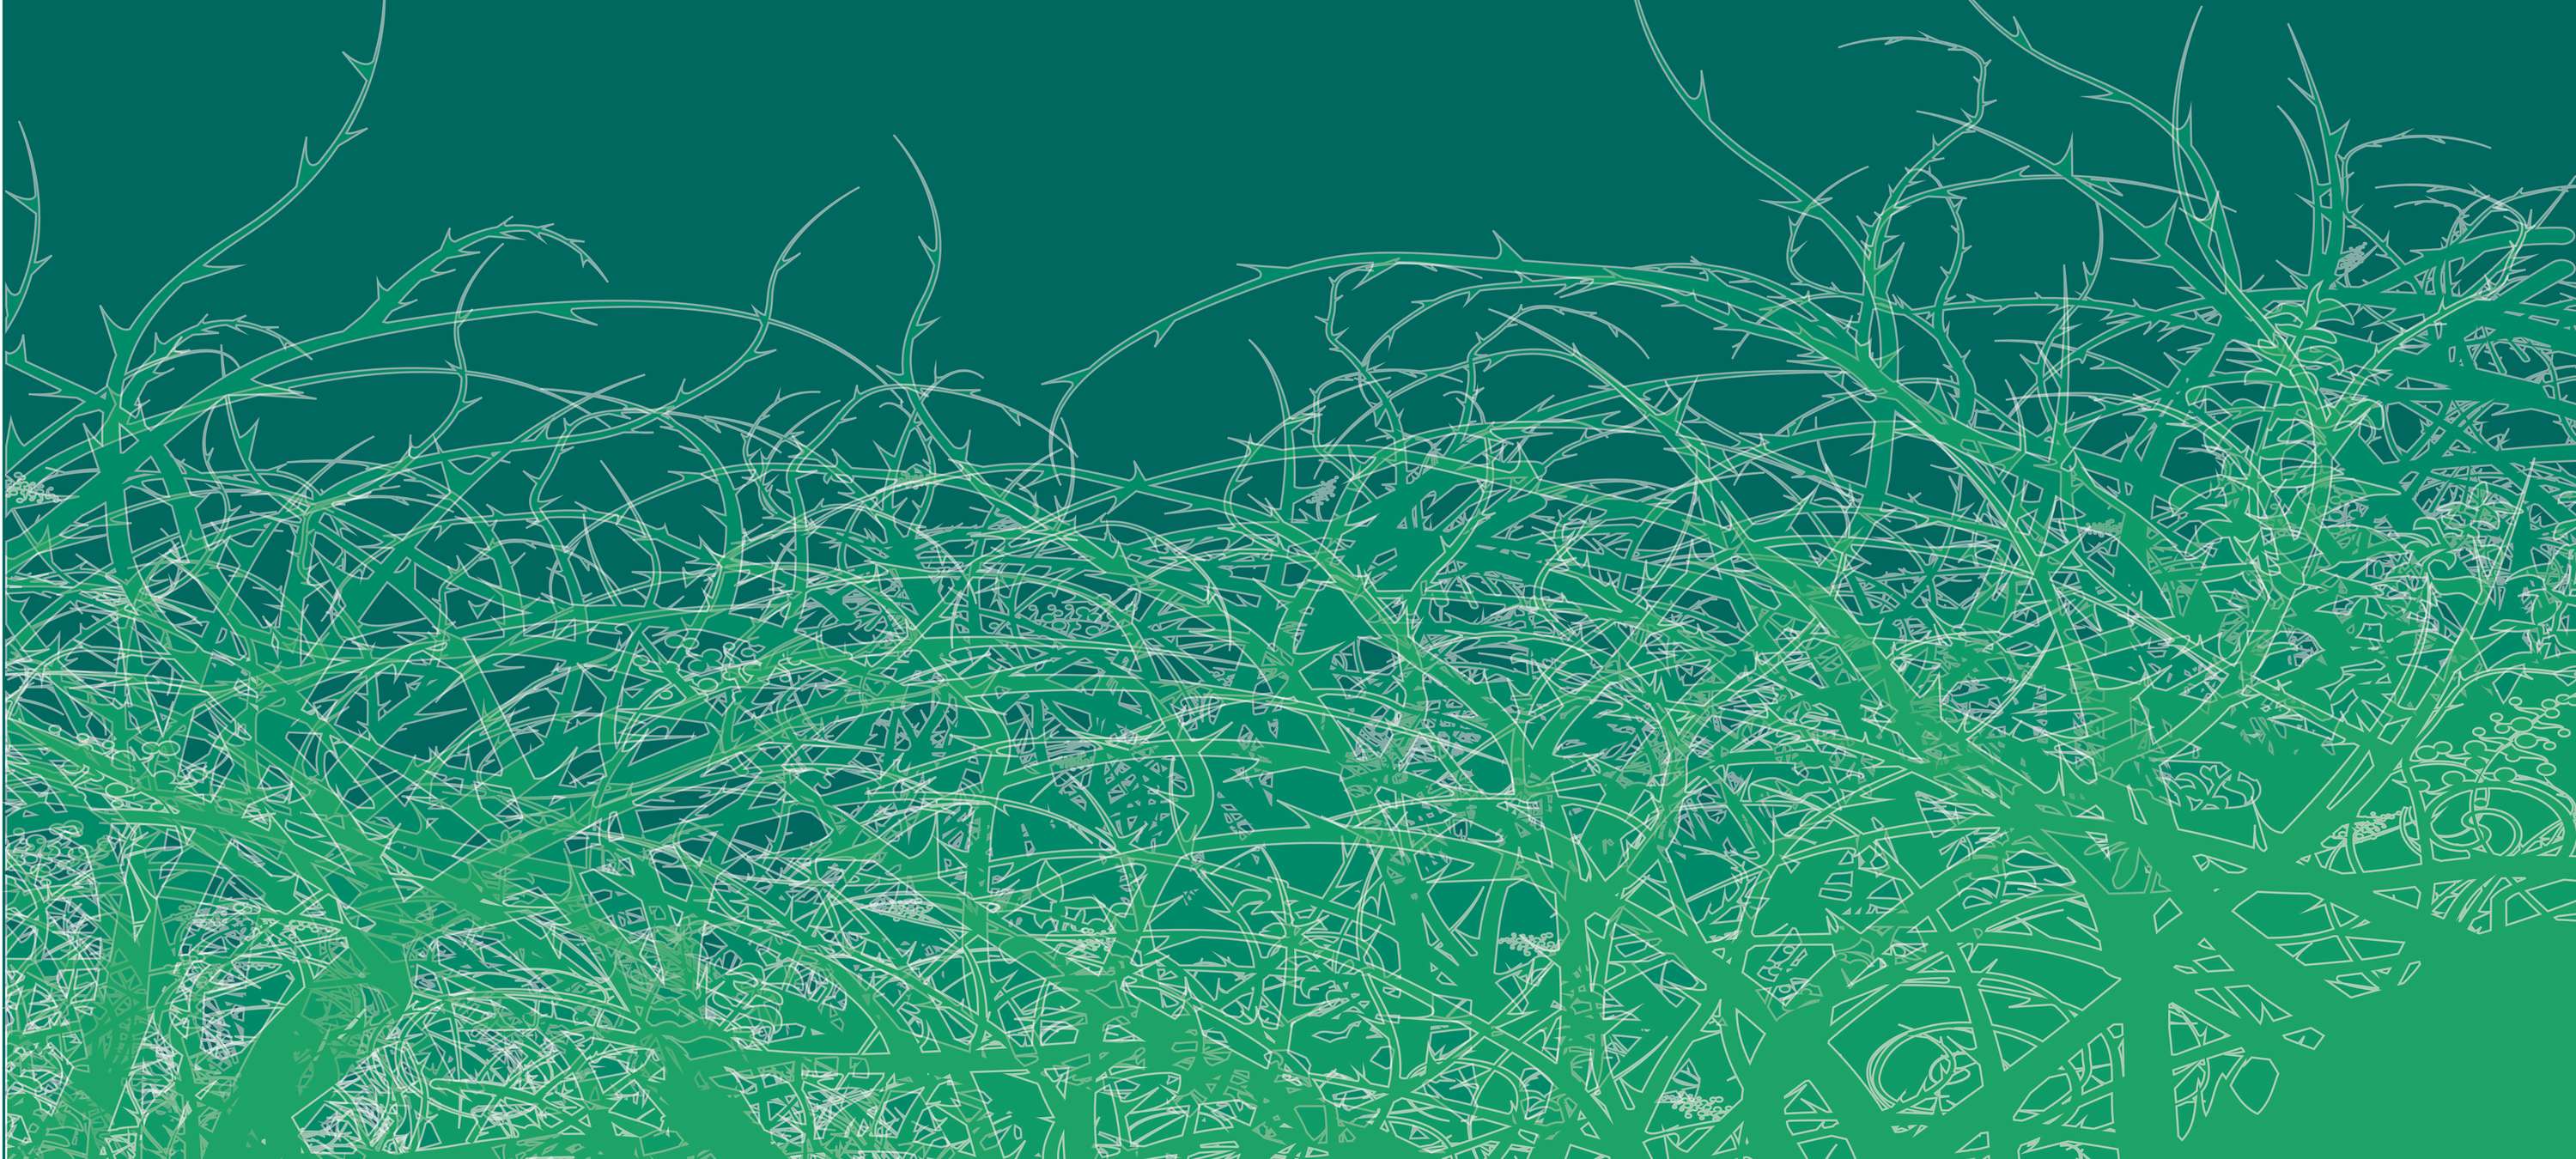             Thorns Behang voor Jeugdkamer - Groen, Wit
        